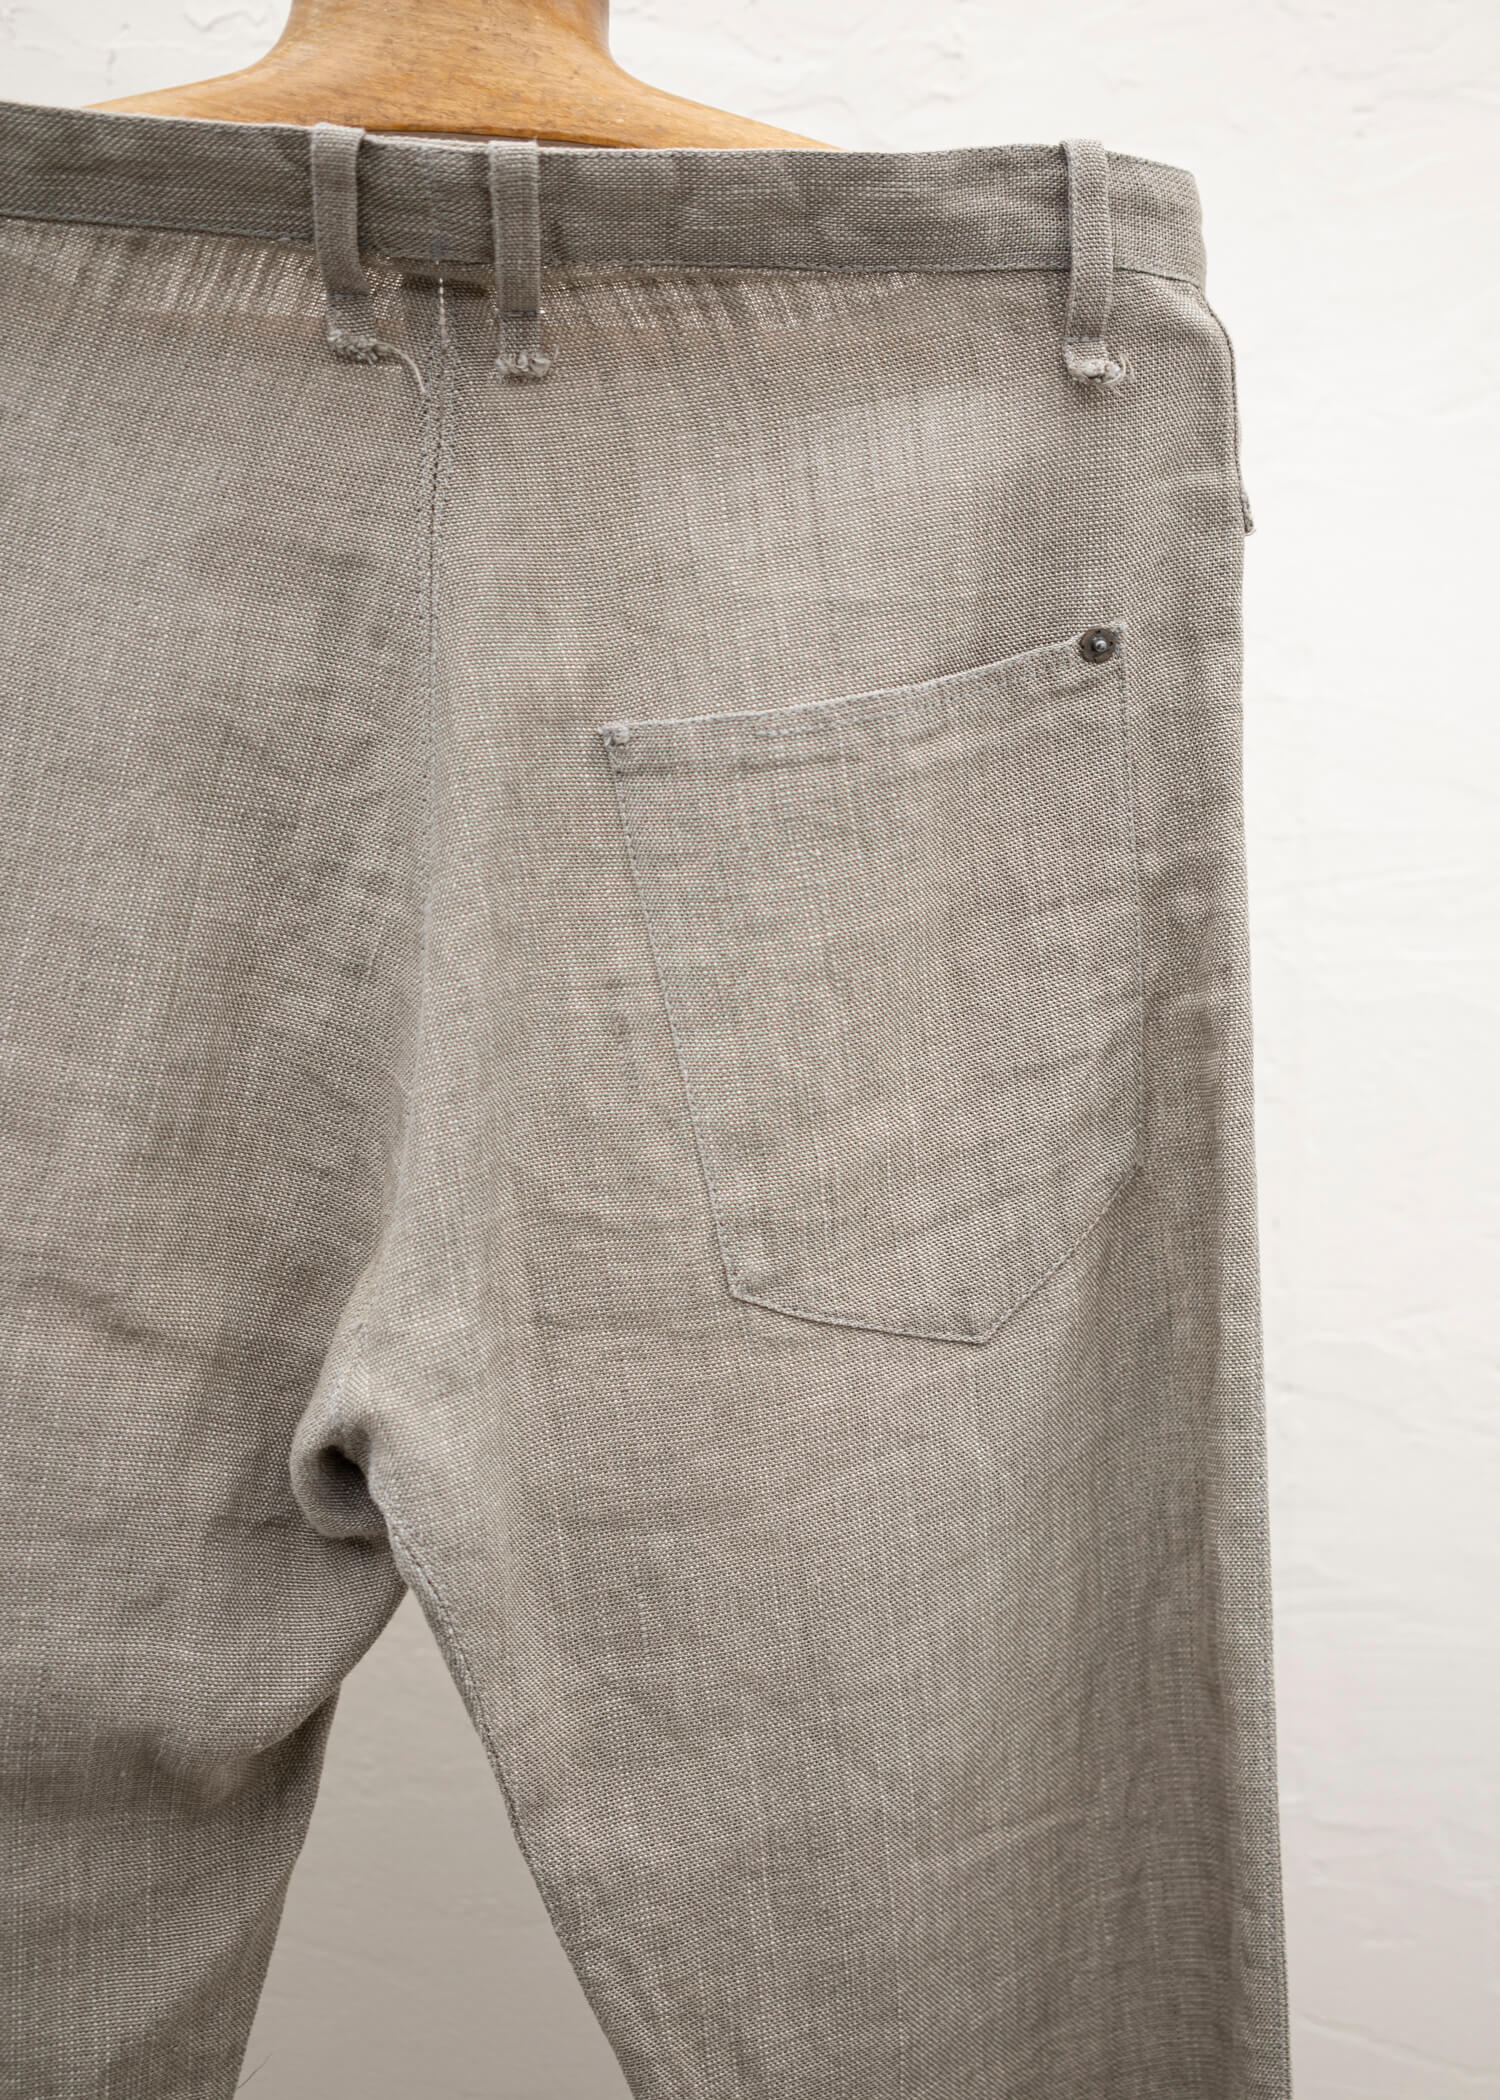 taichi murakami Jeans ラミーパンツ – ARCHIVE OF FASHION